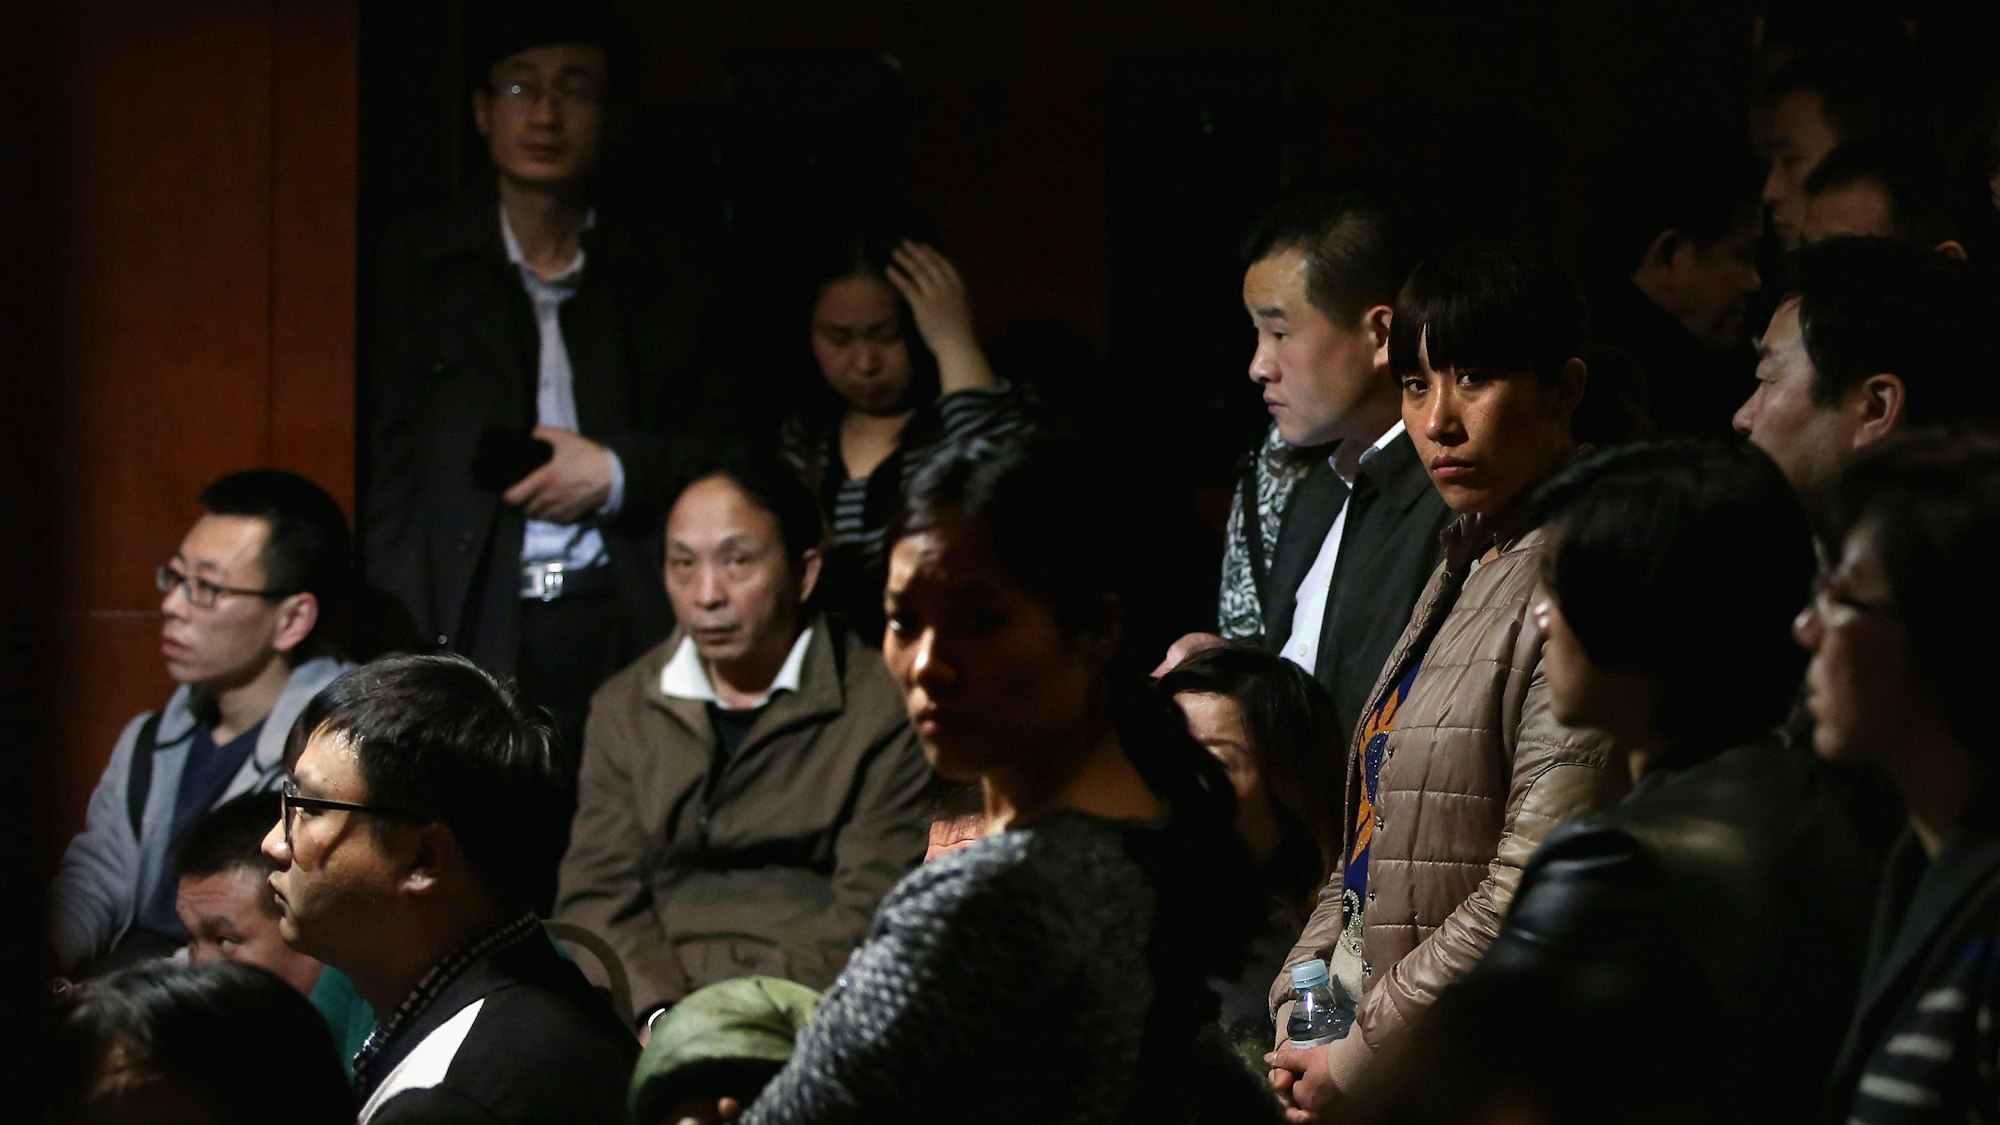 Chinesische Angehörige der vermissten Passagiere an Bord des Malaysia Airlines Fluges MH370 schauen auf einen Fernseher, der eine malaysische Pressekonferenz zeigt.